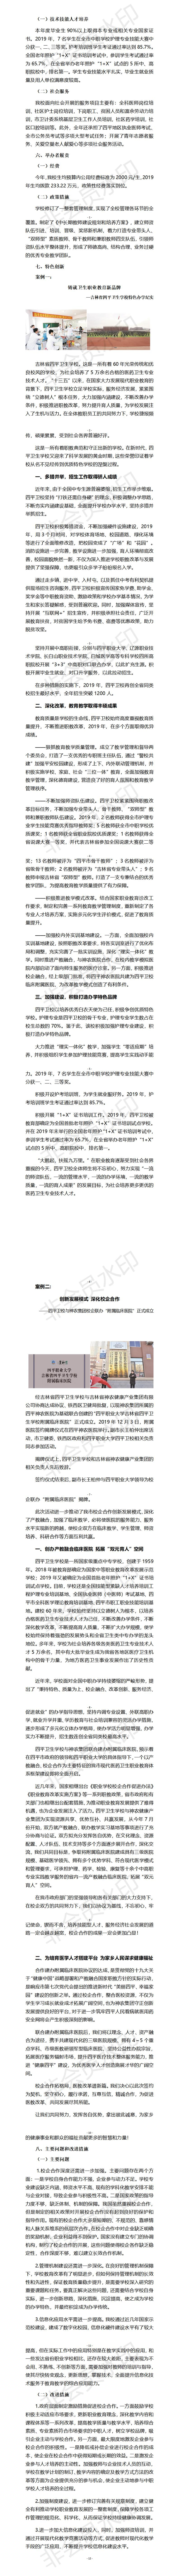 吉林省四平卫生学校2019年度教育质量报告（3）.jpg